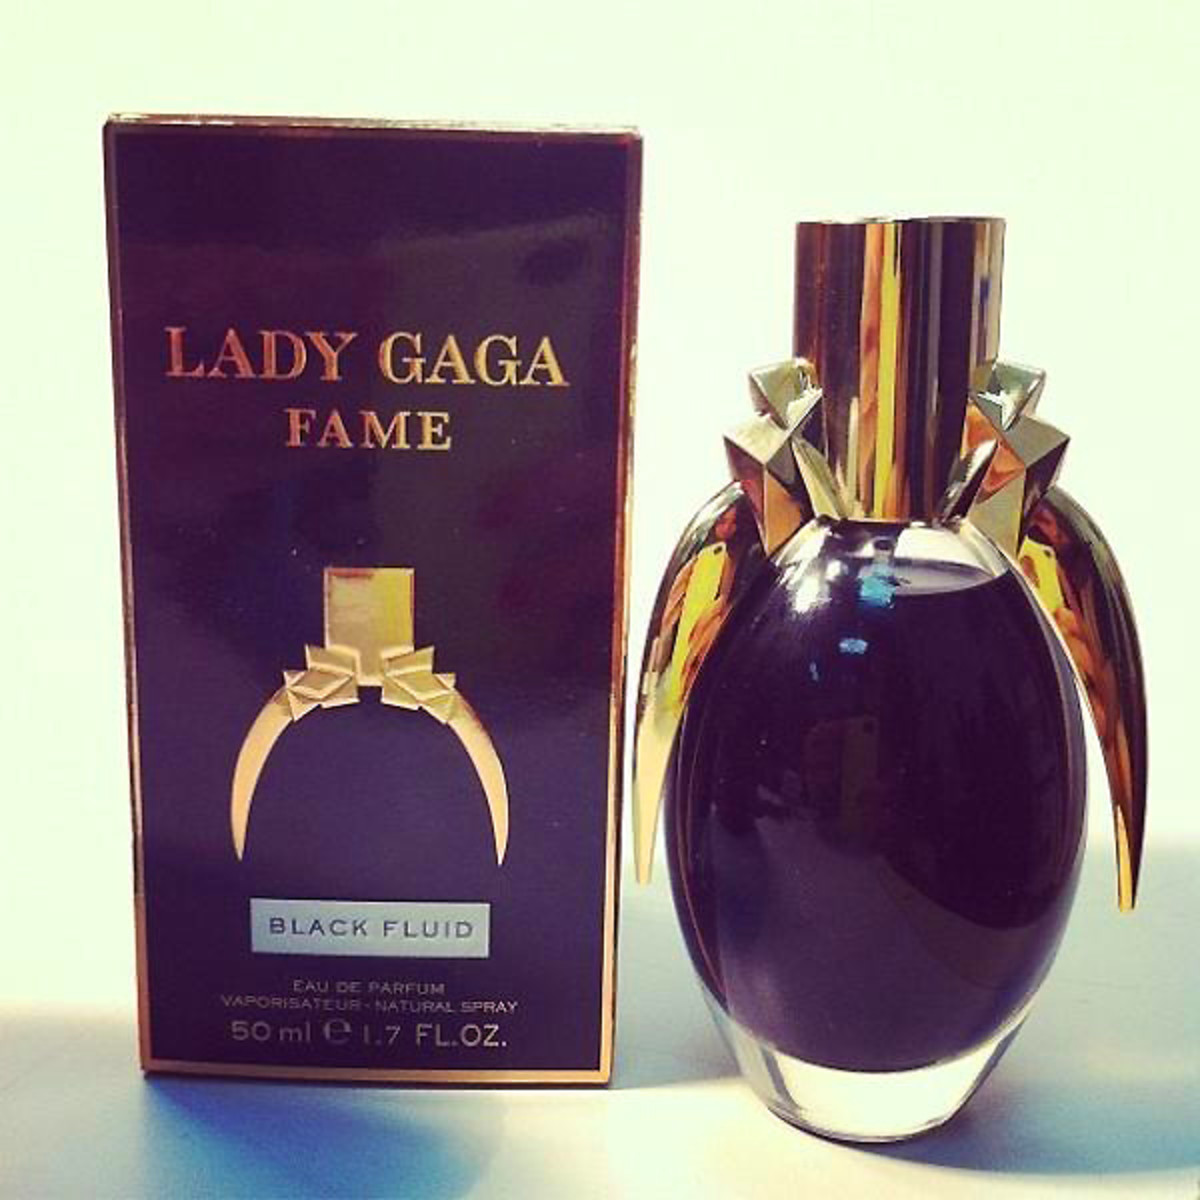 Lady Gaga Fame Black Fluid_via LadyGaga tweet